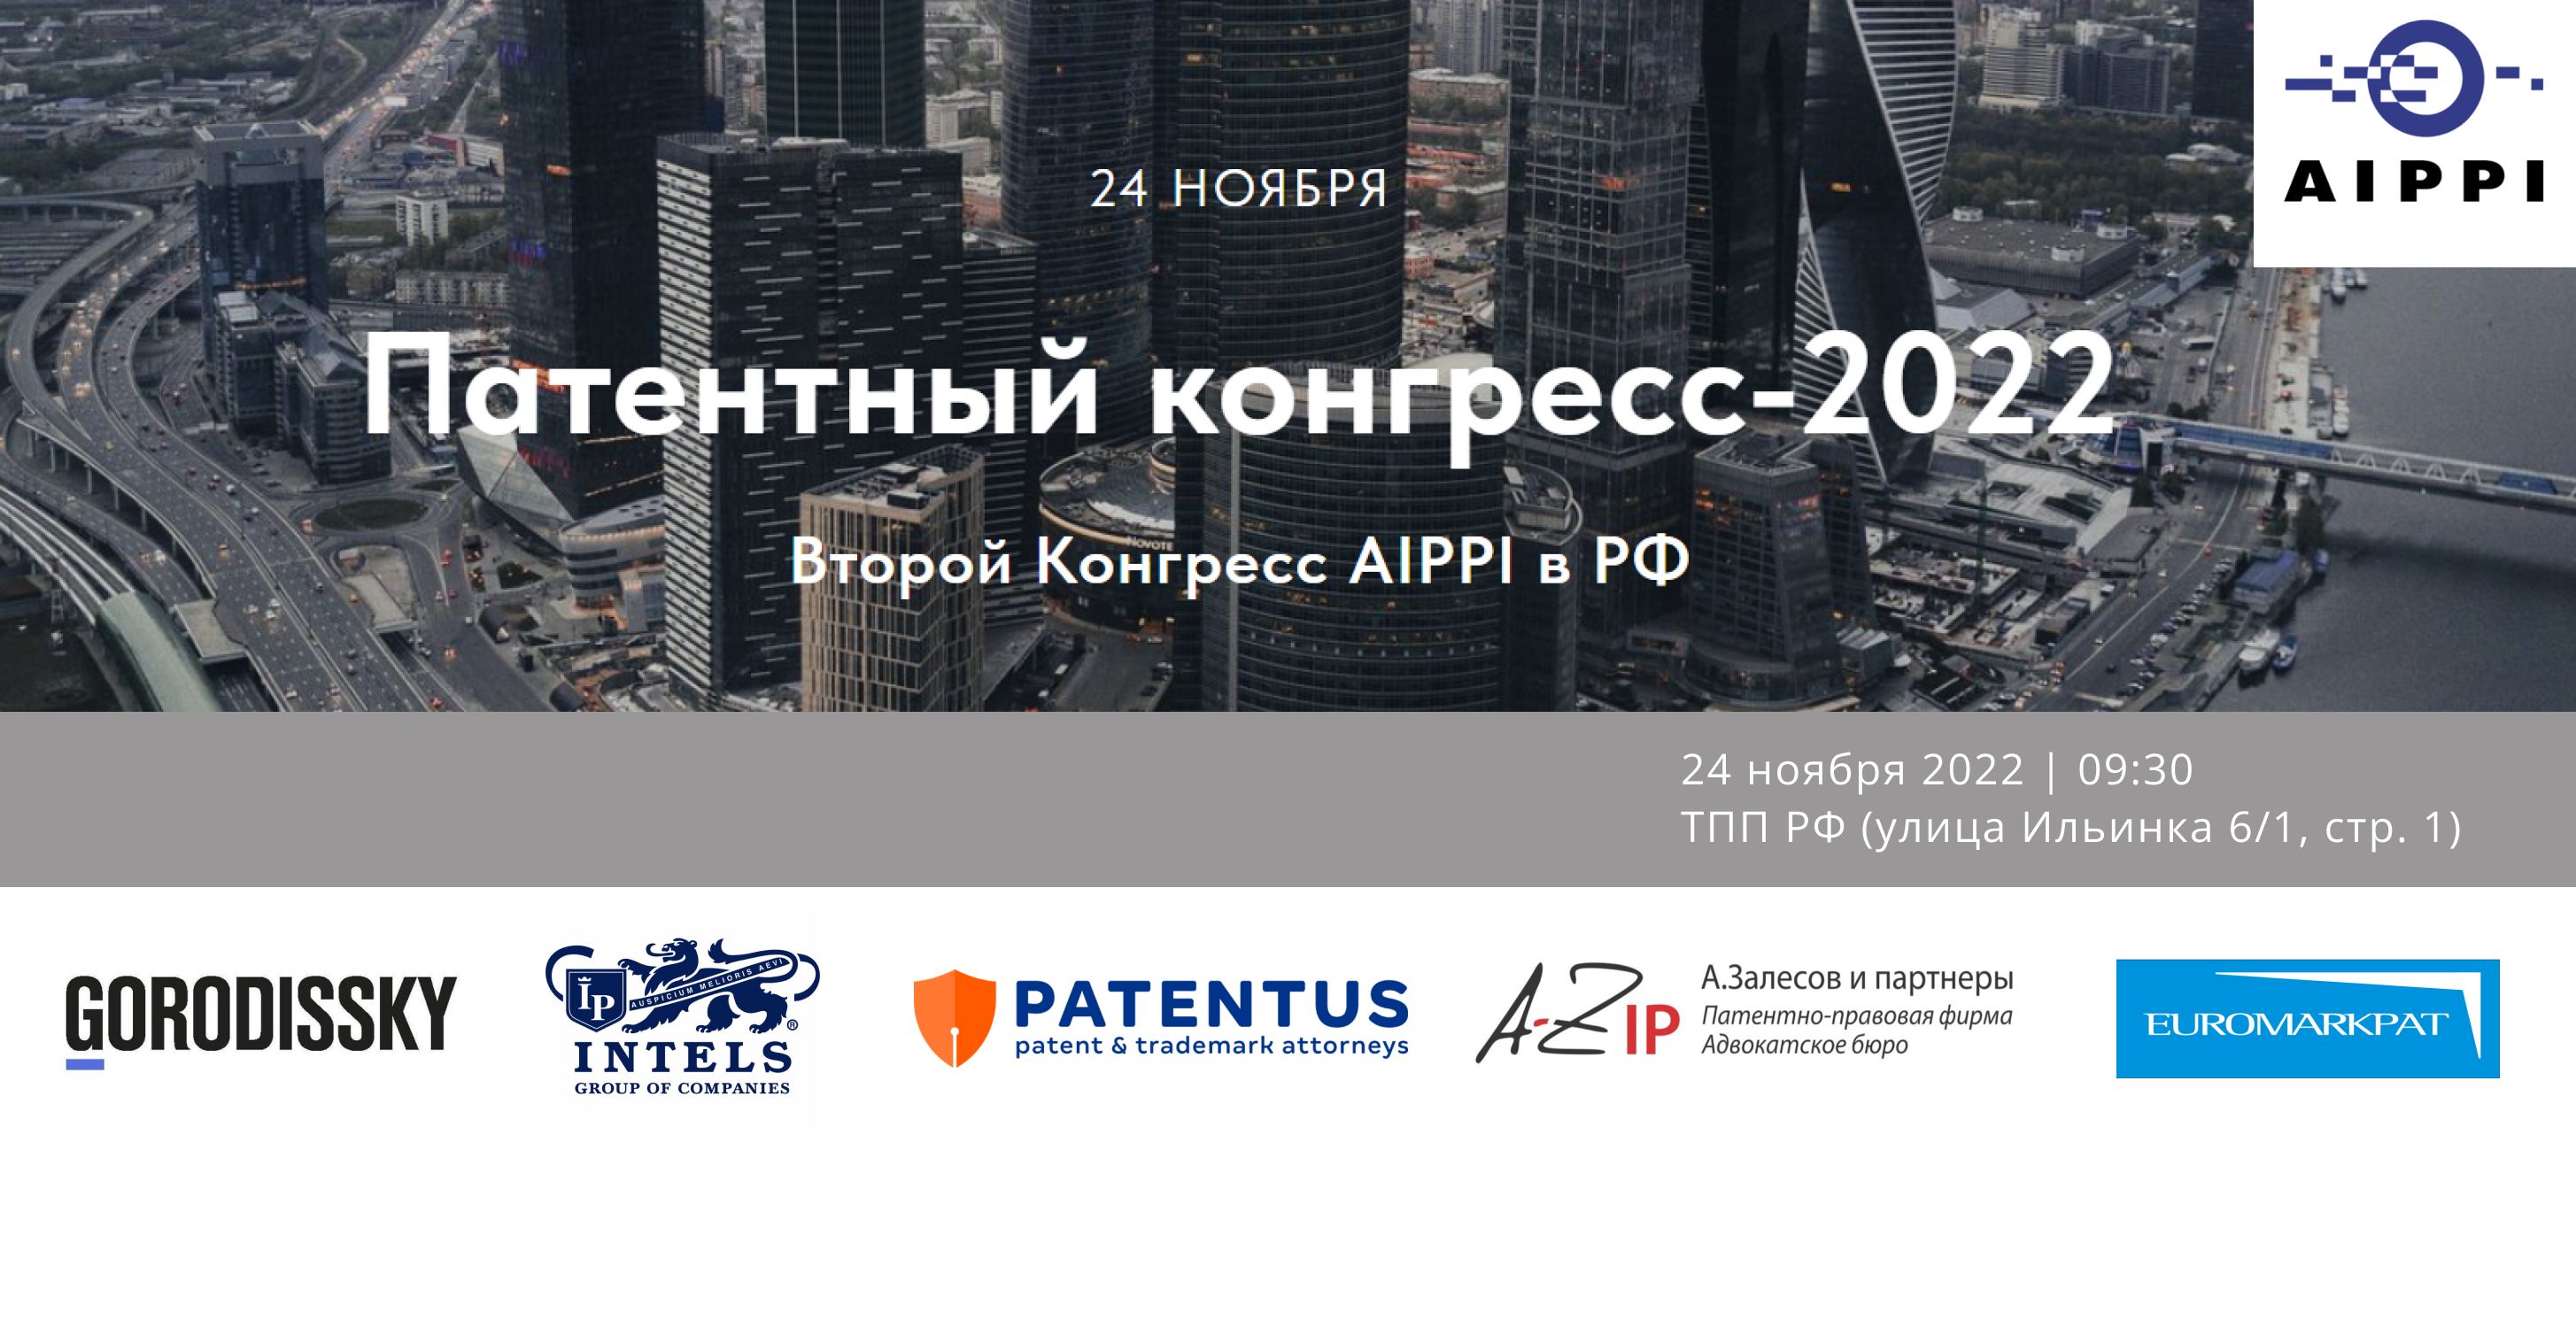 Приглашаем на Патентный конгресс AIPPI-2022